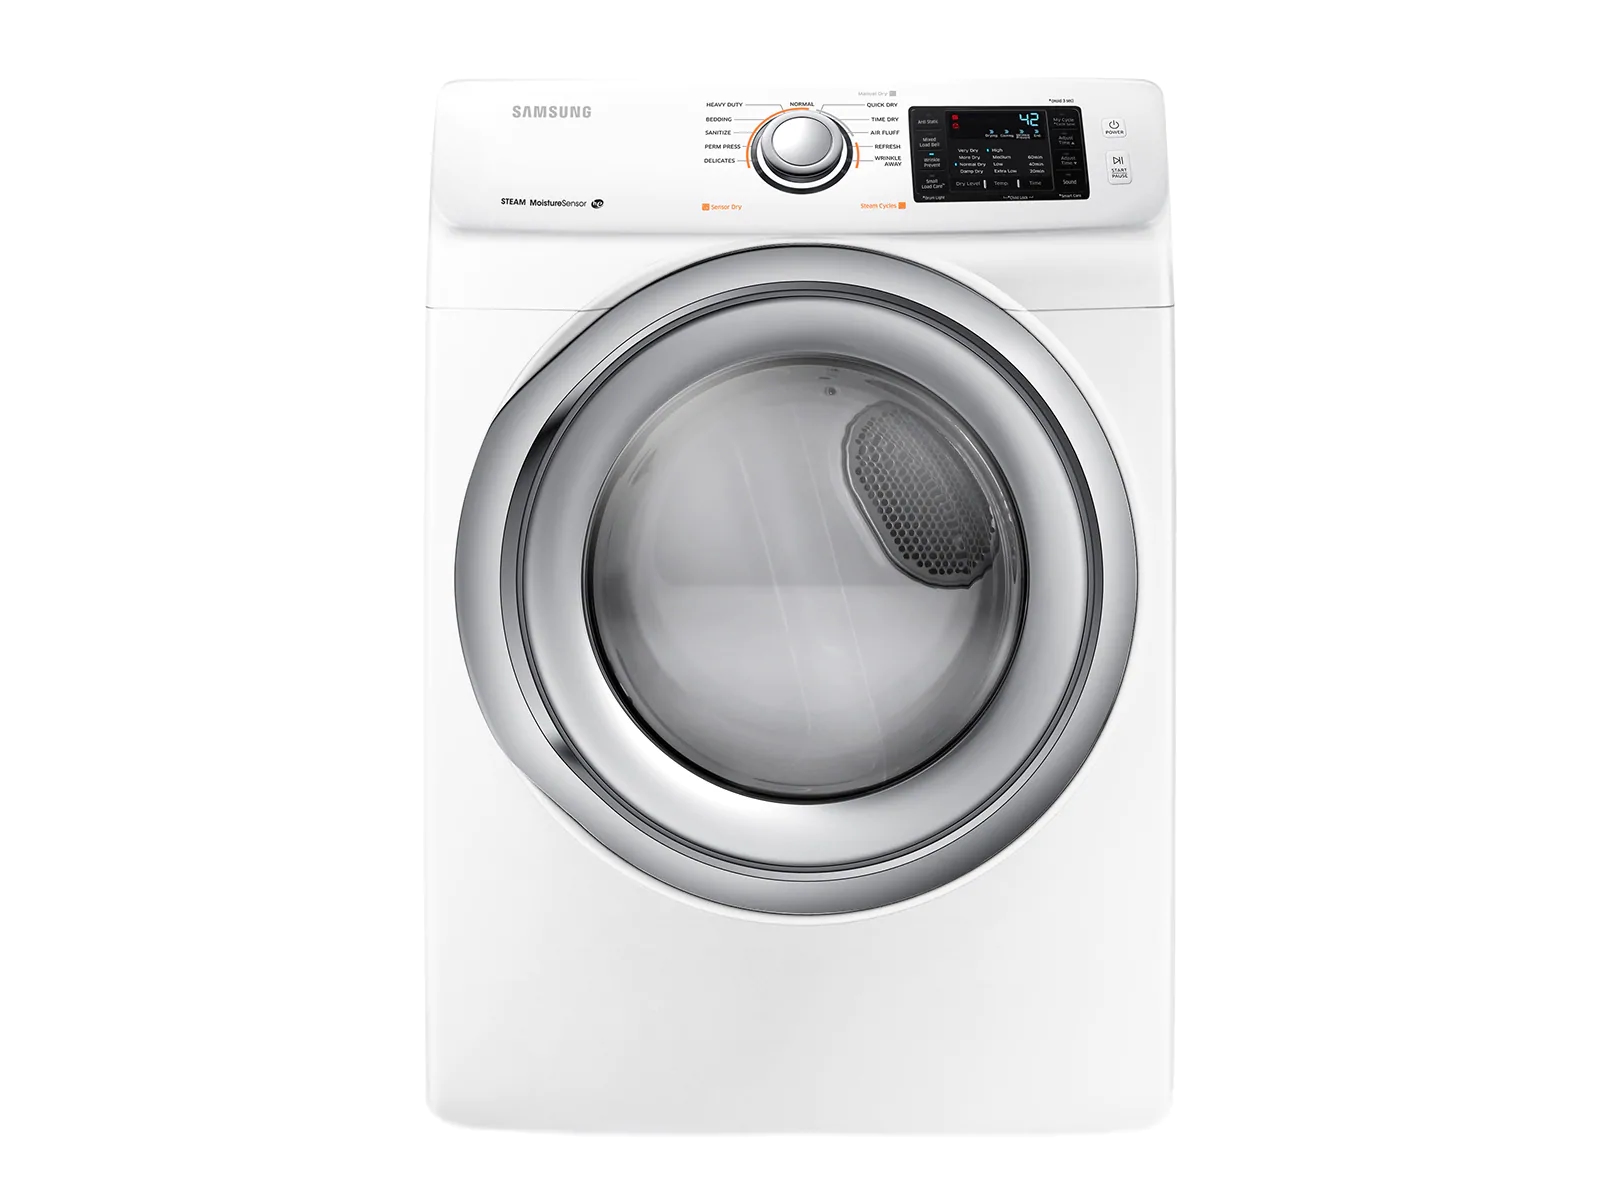 DV5200 7.5 cu. ft. Electric Dryer Dryers DV42H5200EW/A3 Samsung US